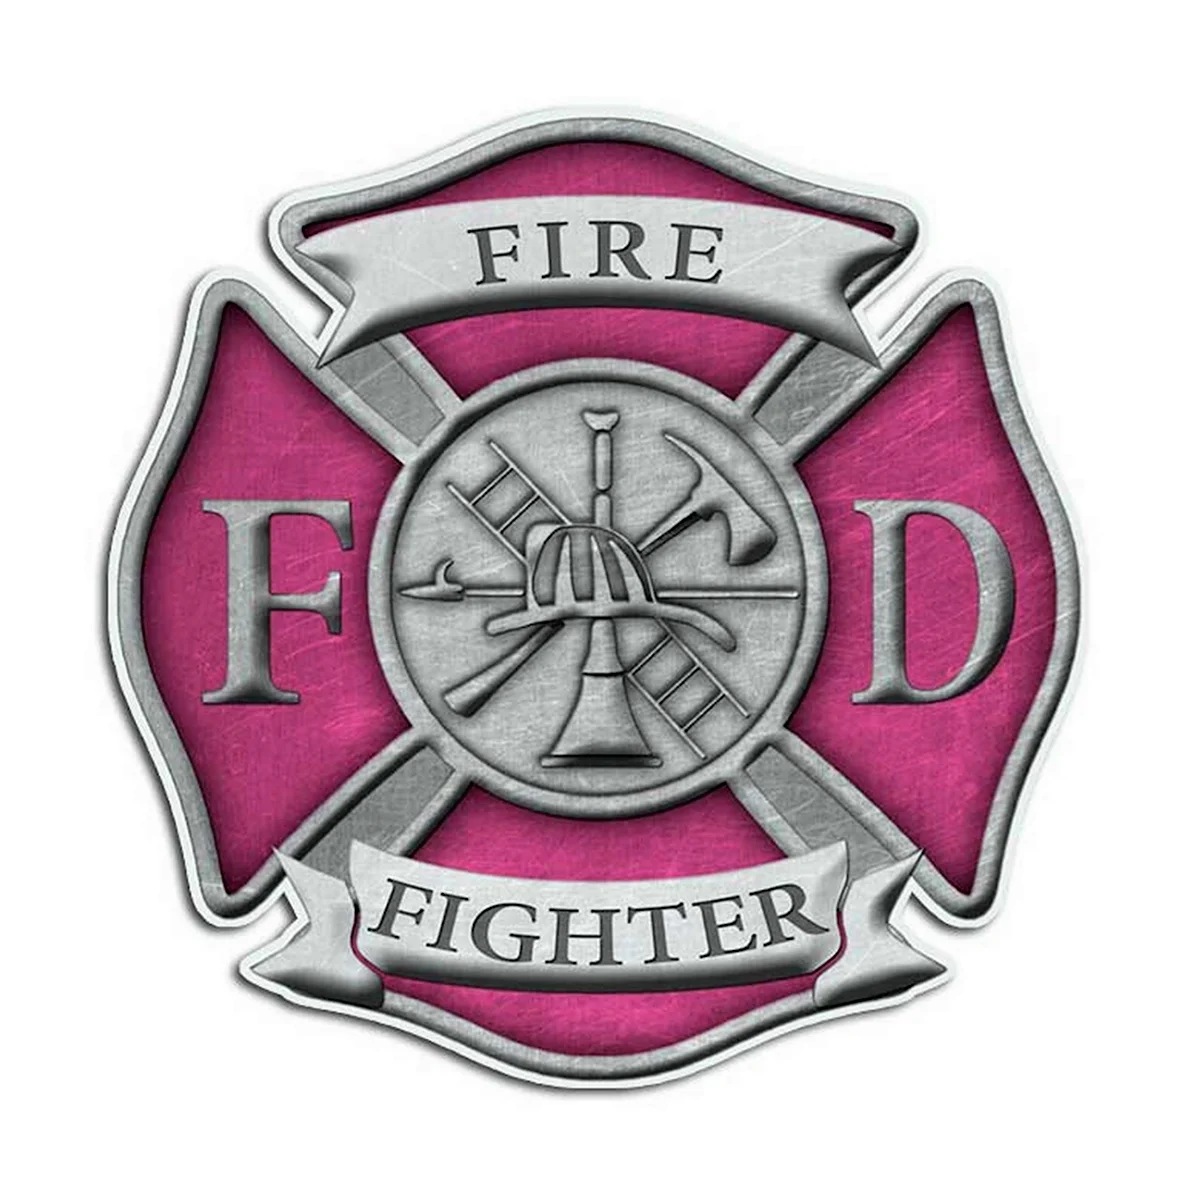 Firefighter пенсия наклейка